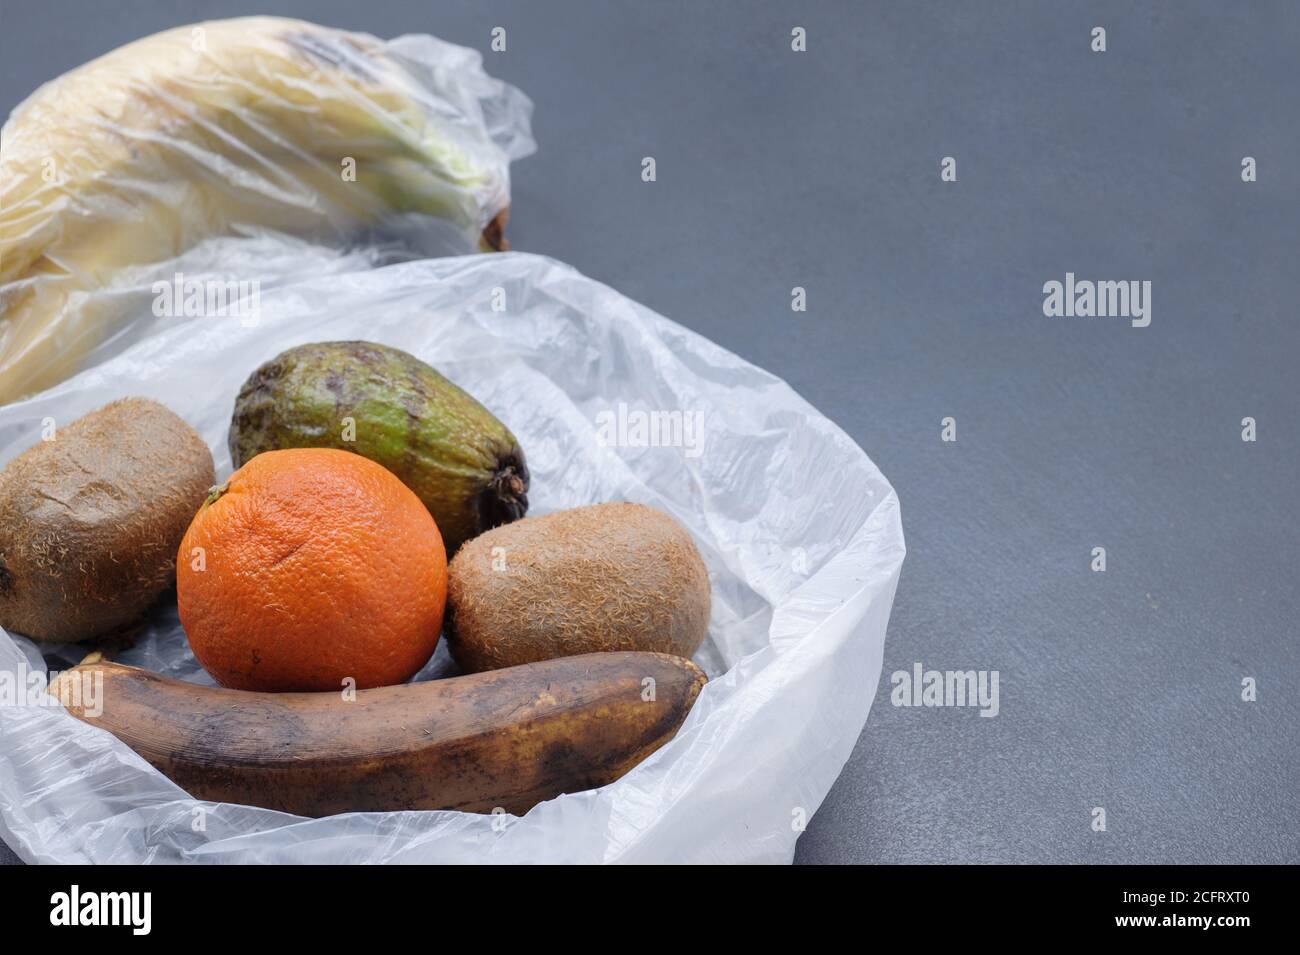 Frutta rovinata nel sacchetto di plastica su sfondo grigio. Spazzatura discarica cibo marcio. Concetto di zero sprechi. Immagine con spazio di copia, orizzontale. Foto Stock